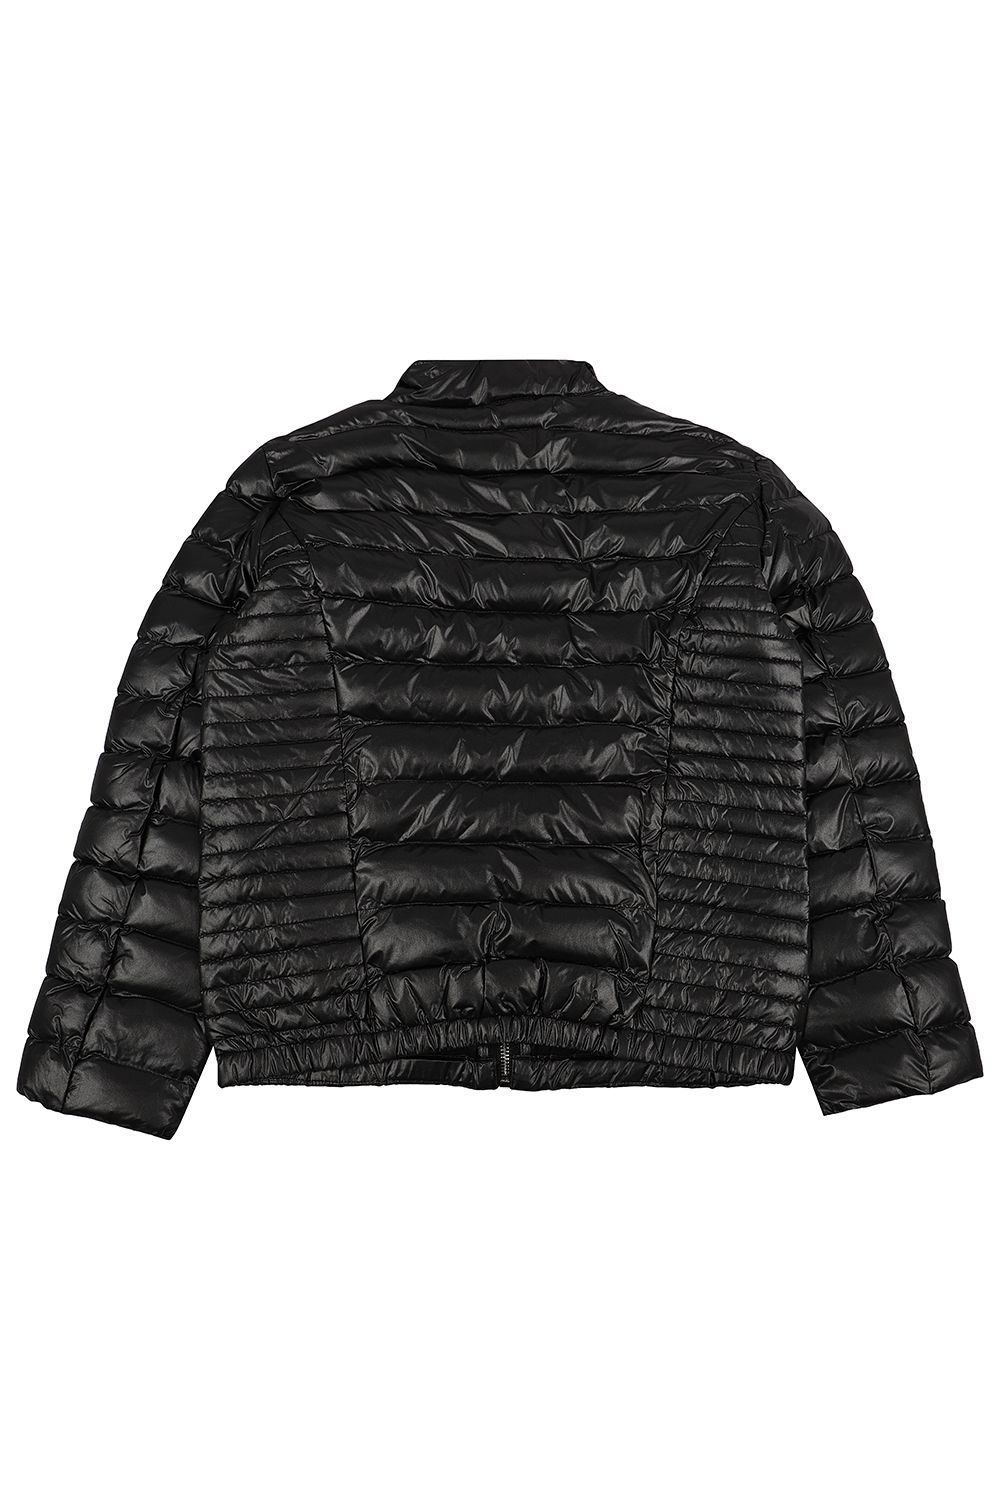 Куртка Gaialuna, размер 152, цвет черный G2338 - фото 3